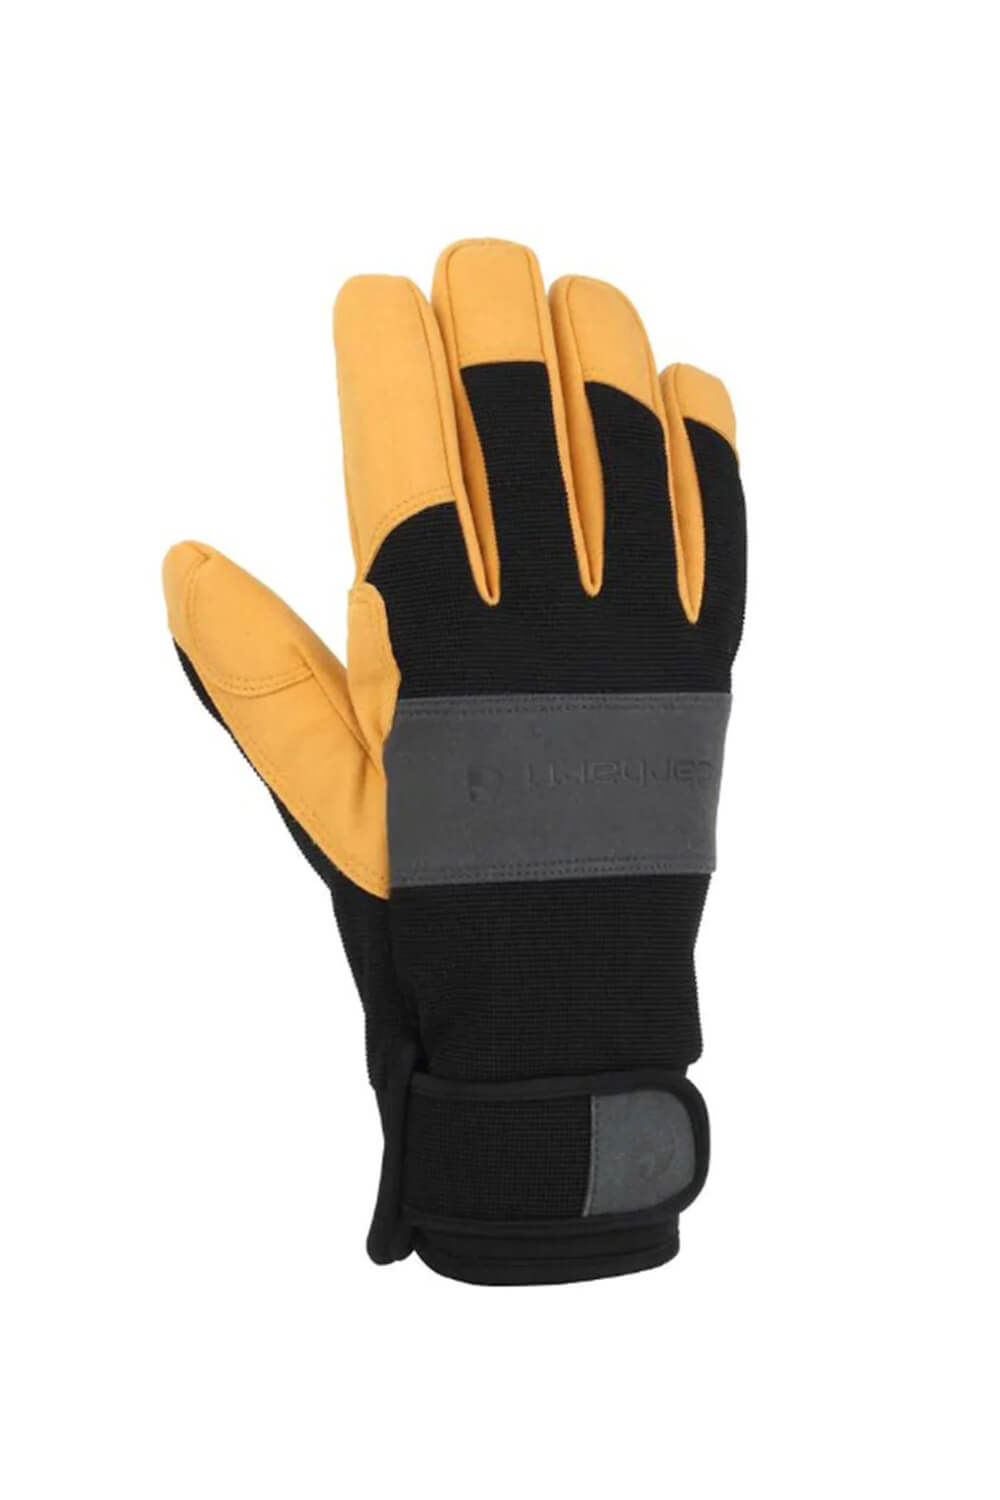 https://www.gliks.com/cdn/shop/files/carhartt-gloves-men-storm-defender-grey-yellow-1.jpg?v=1695398751